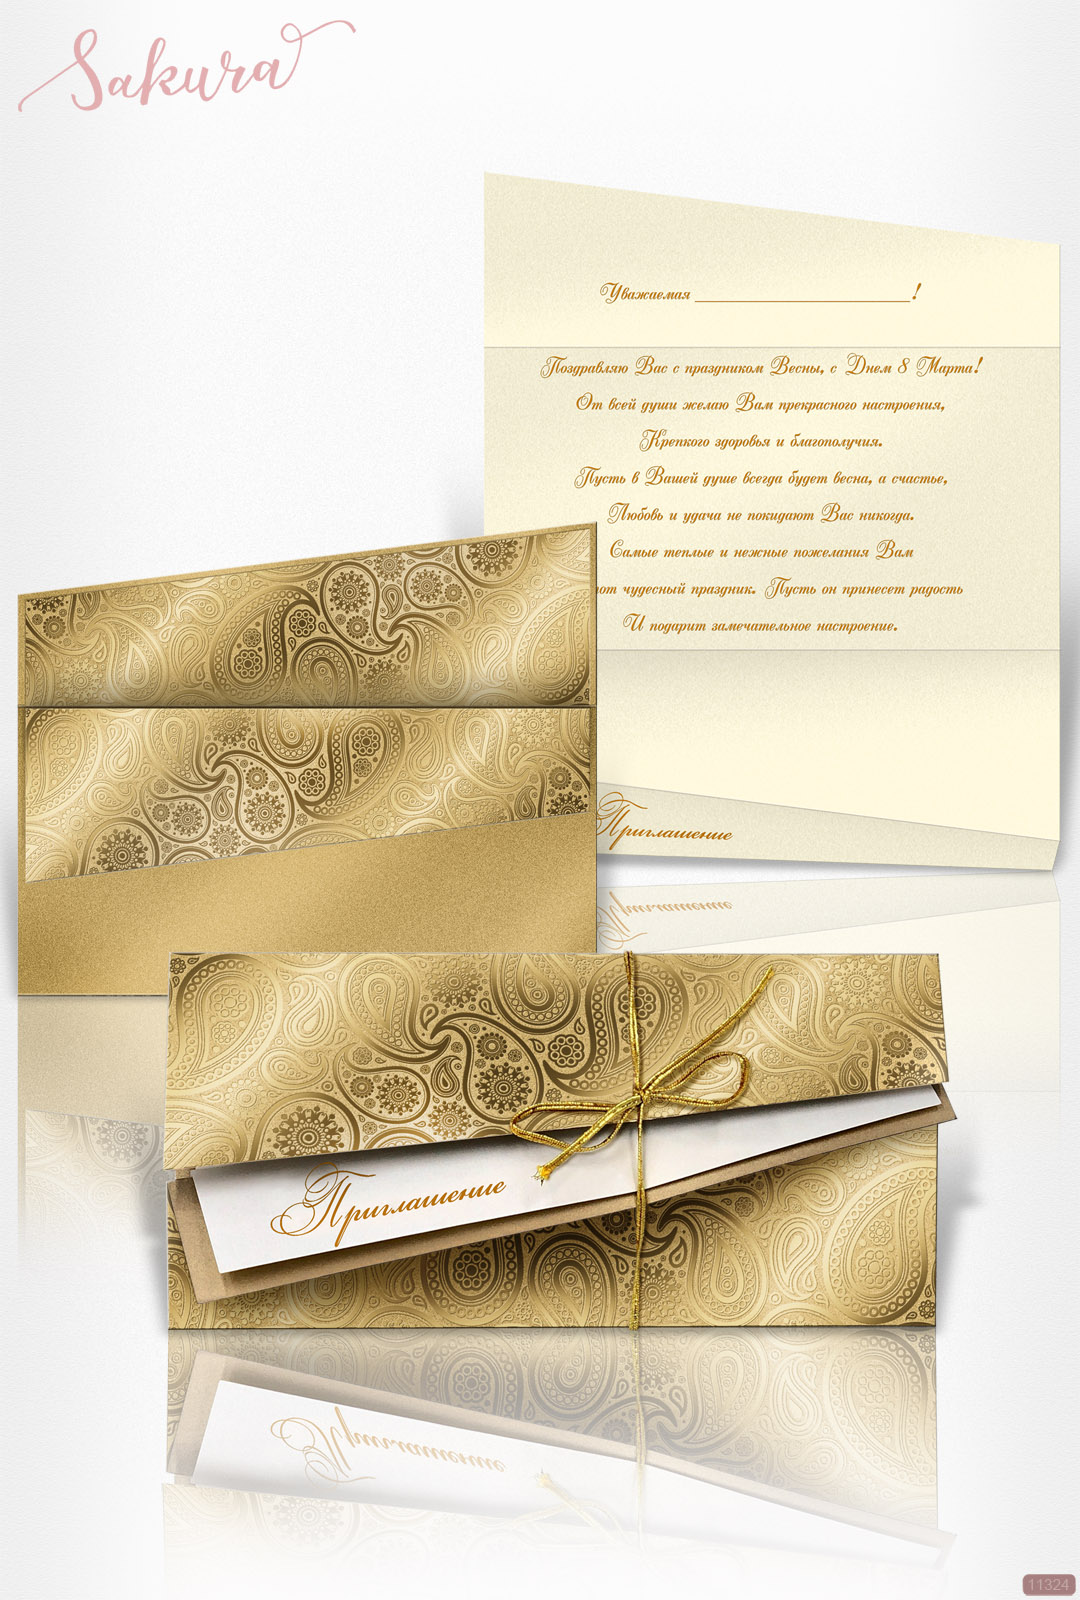 Приглашение на свадьбу или юбилей из темно-золотого картона в 2 сложения с тисненым золотым узором.